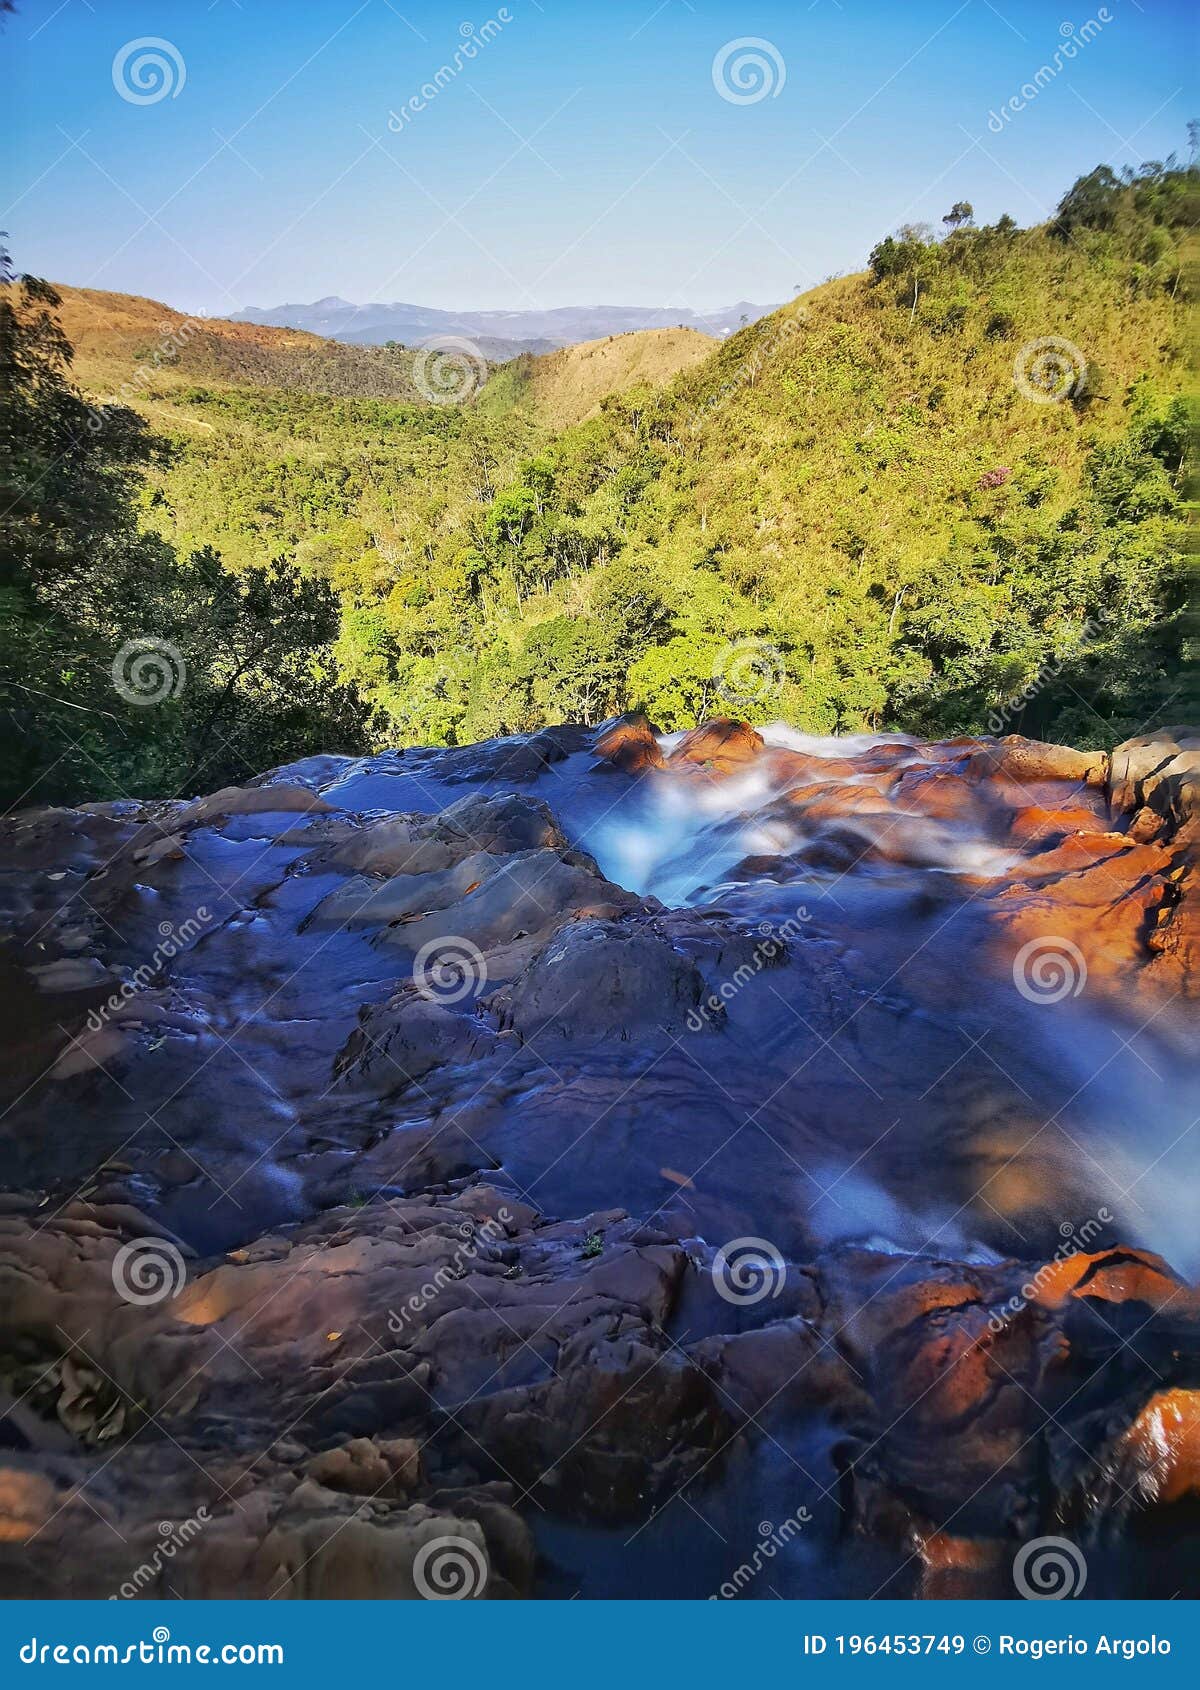 viana waterfall, rio acima, minas gerais, brazil.